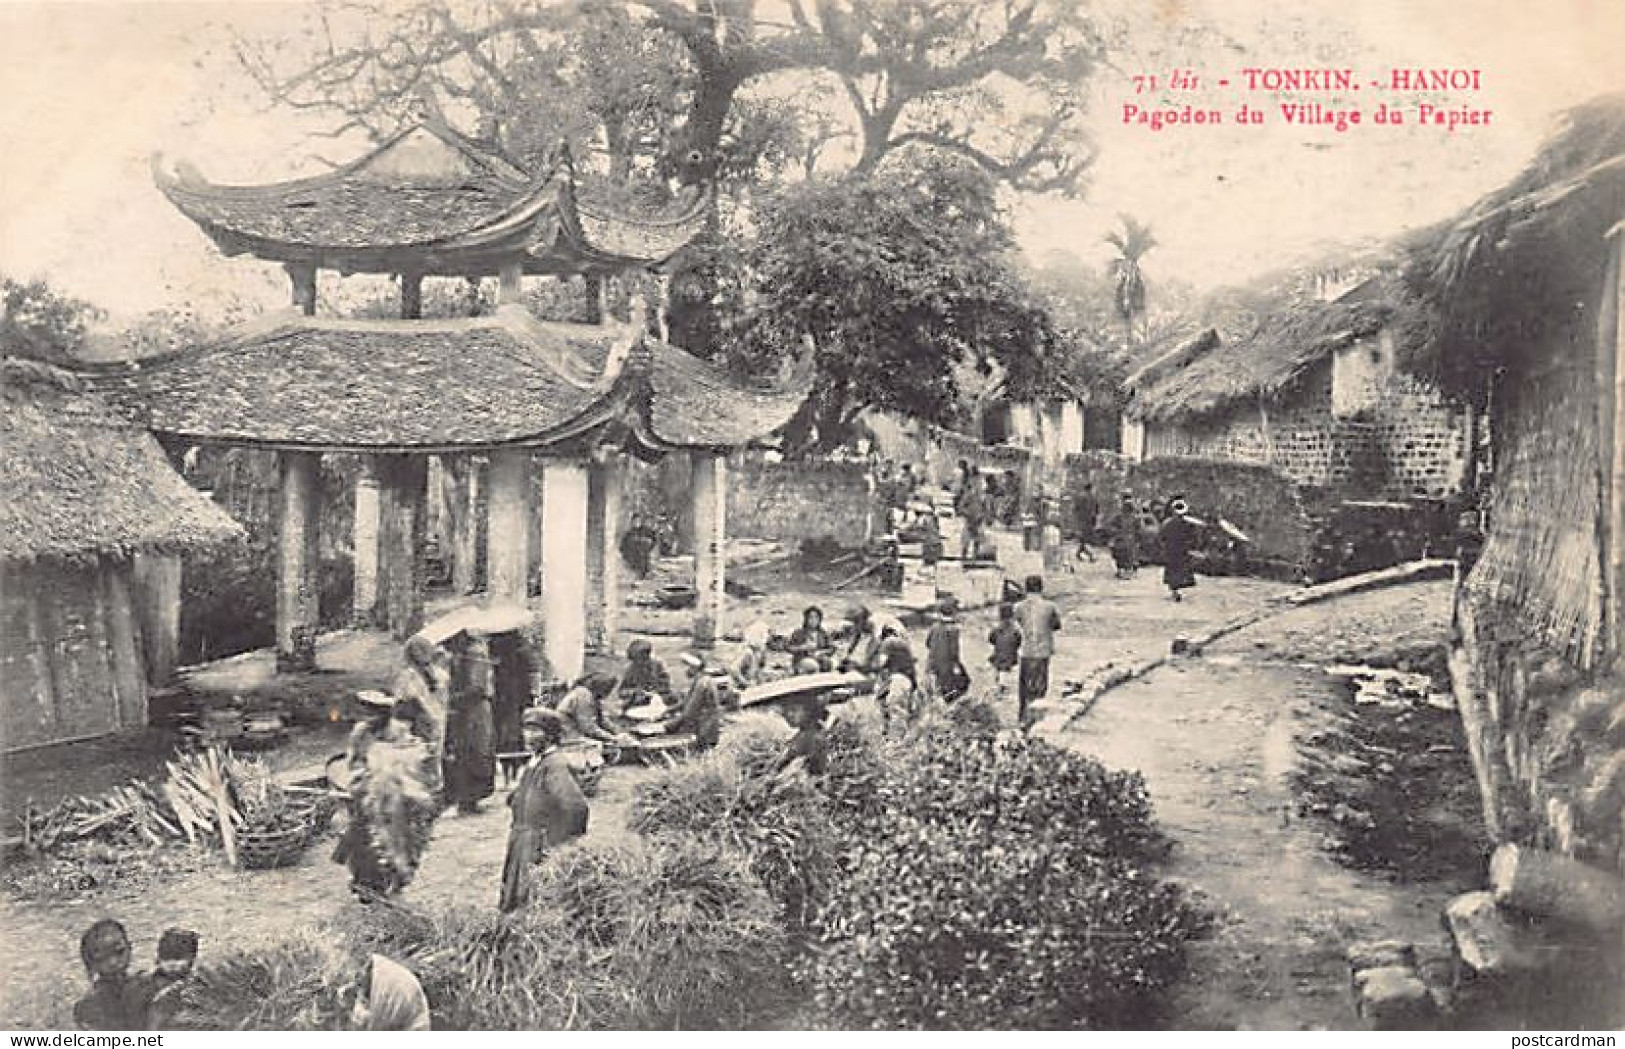 Viet-Nam - HANOÏ - Pagodon Du Village Du Papier - Ed. Imprimeries Réunies De Nan - Viêt-Nam